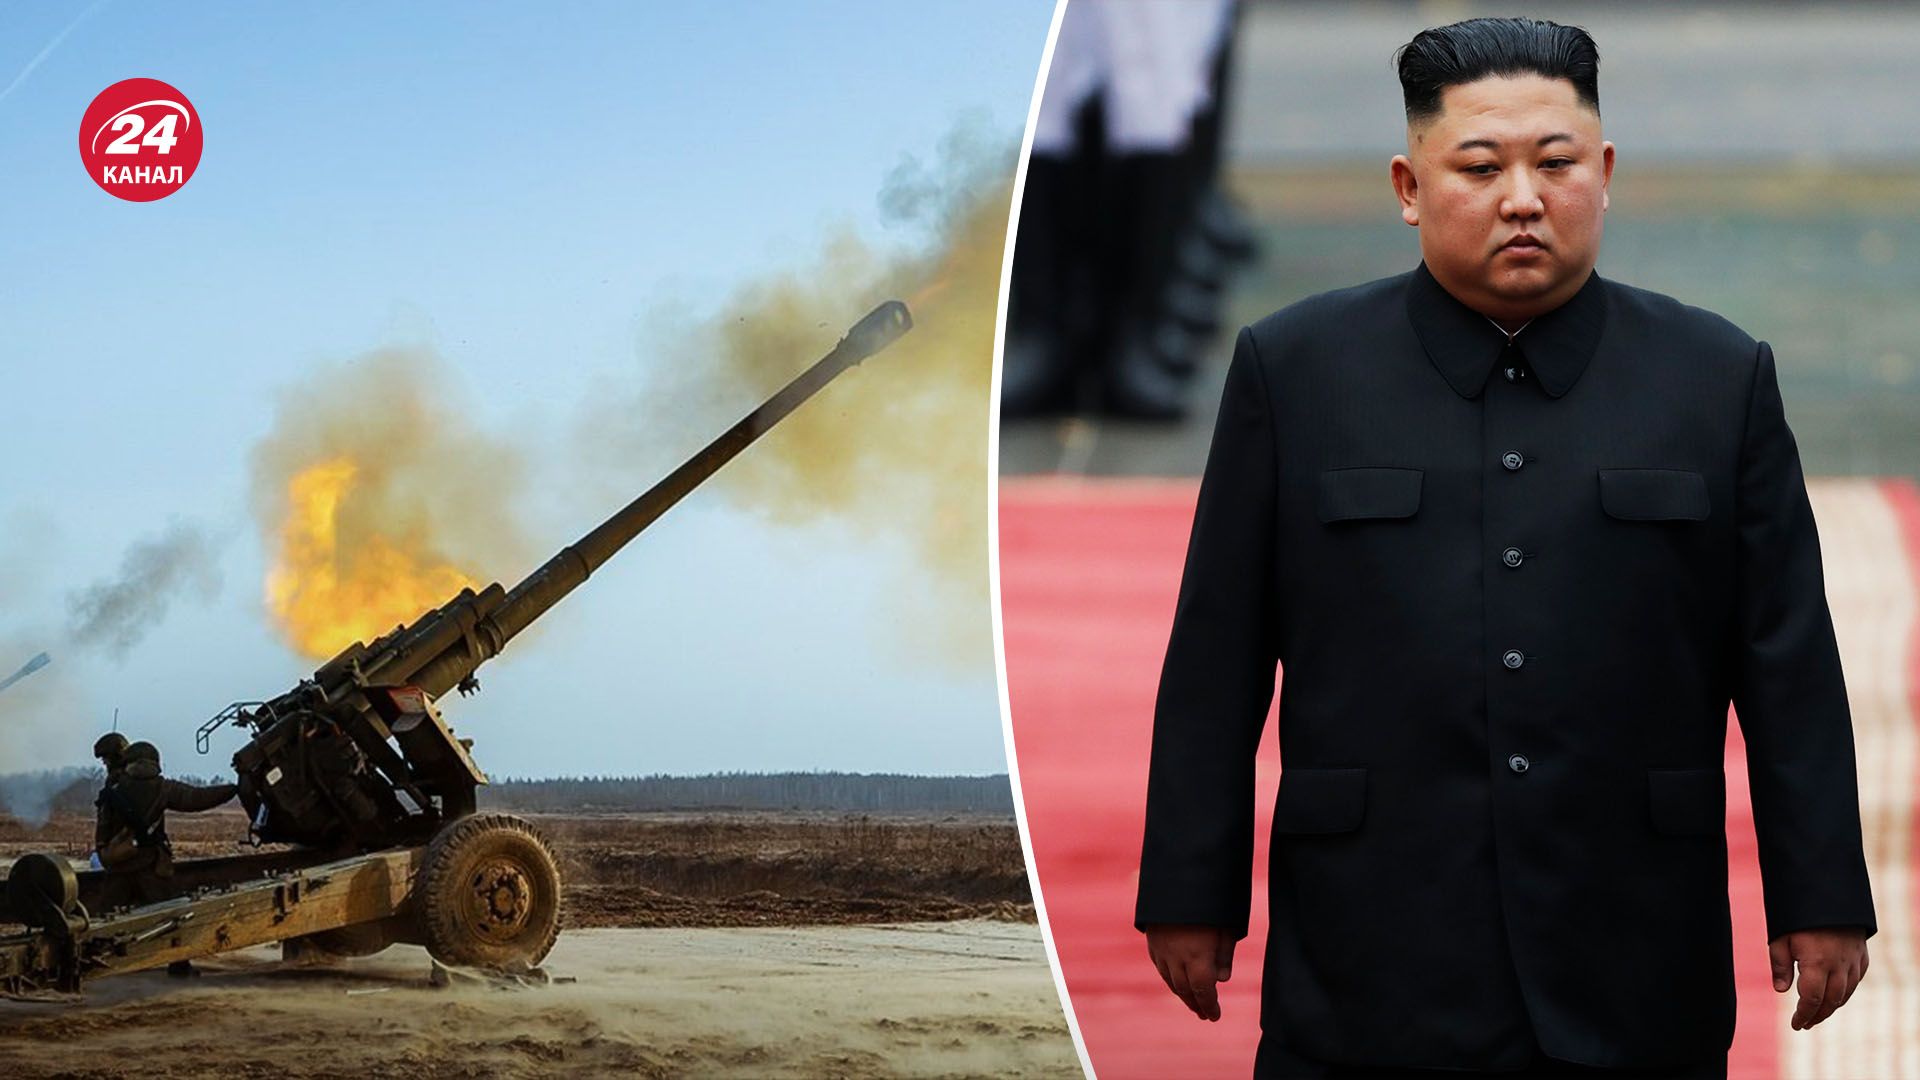 КНДР обстреливает Южную Корею - о чем свидетельствуют такие действия Пхеньяна - 24 Канал